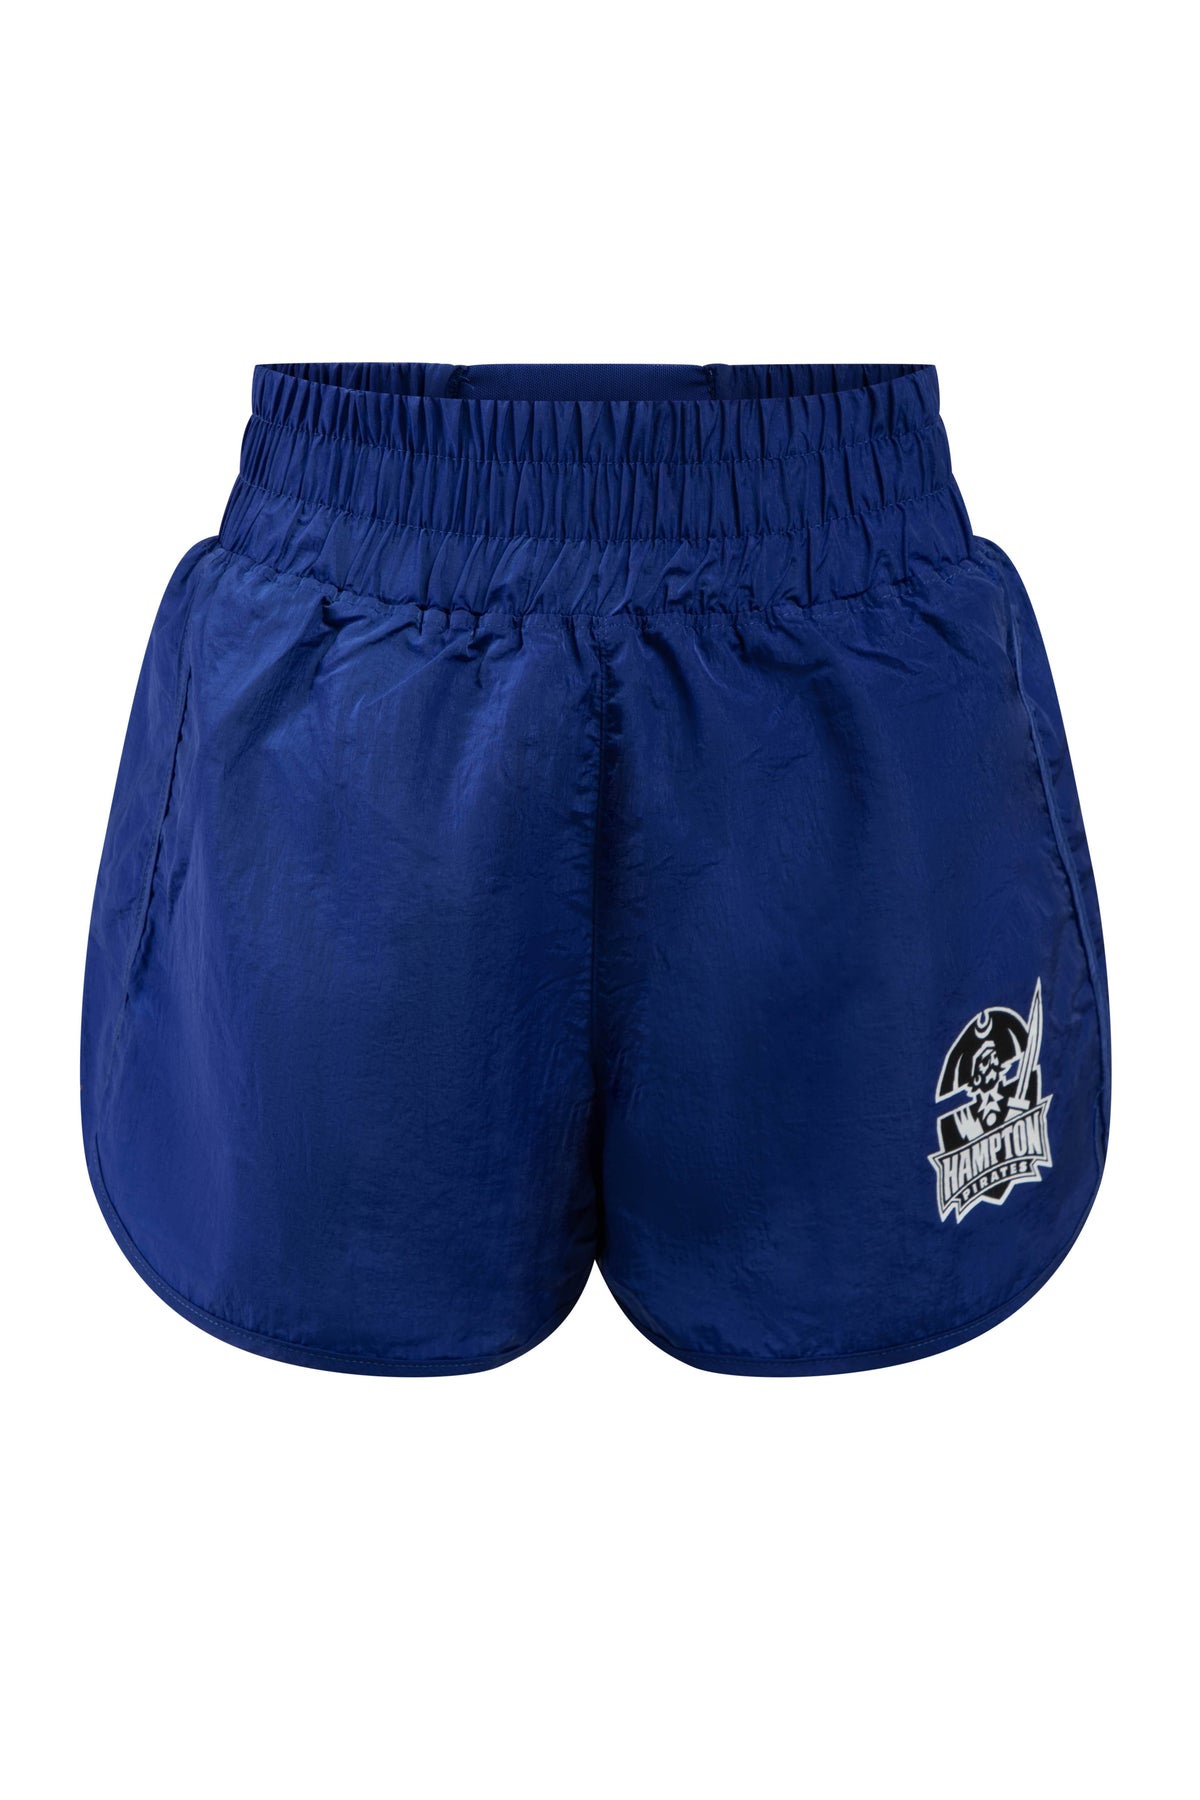 Hampton University Boxer Shorts